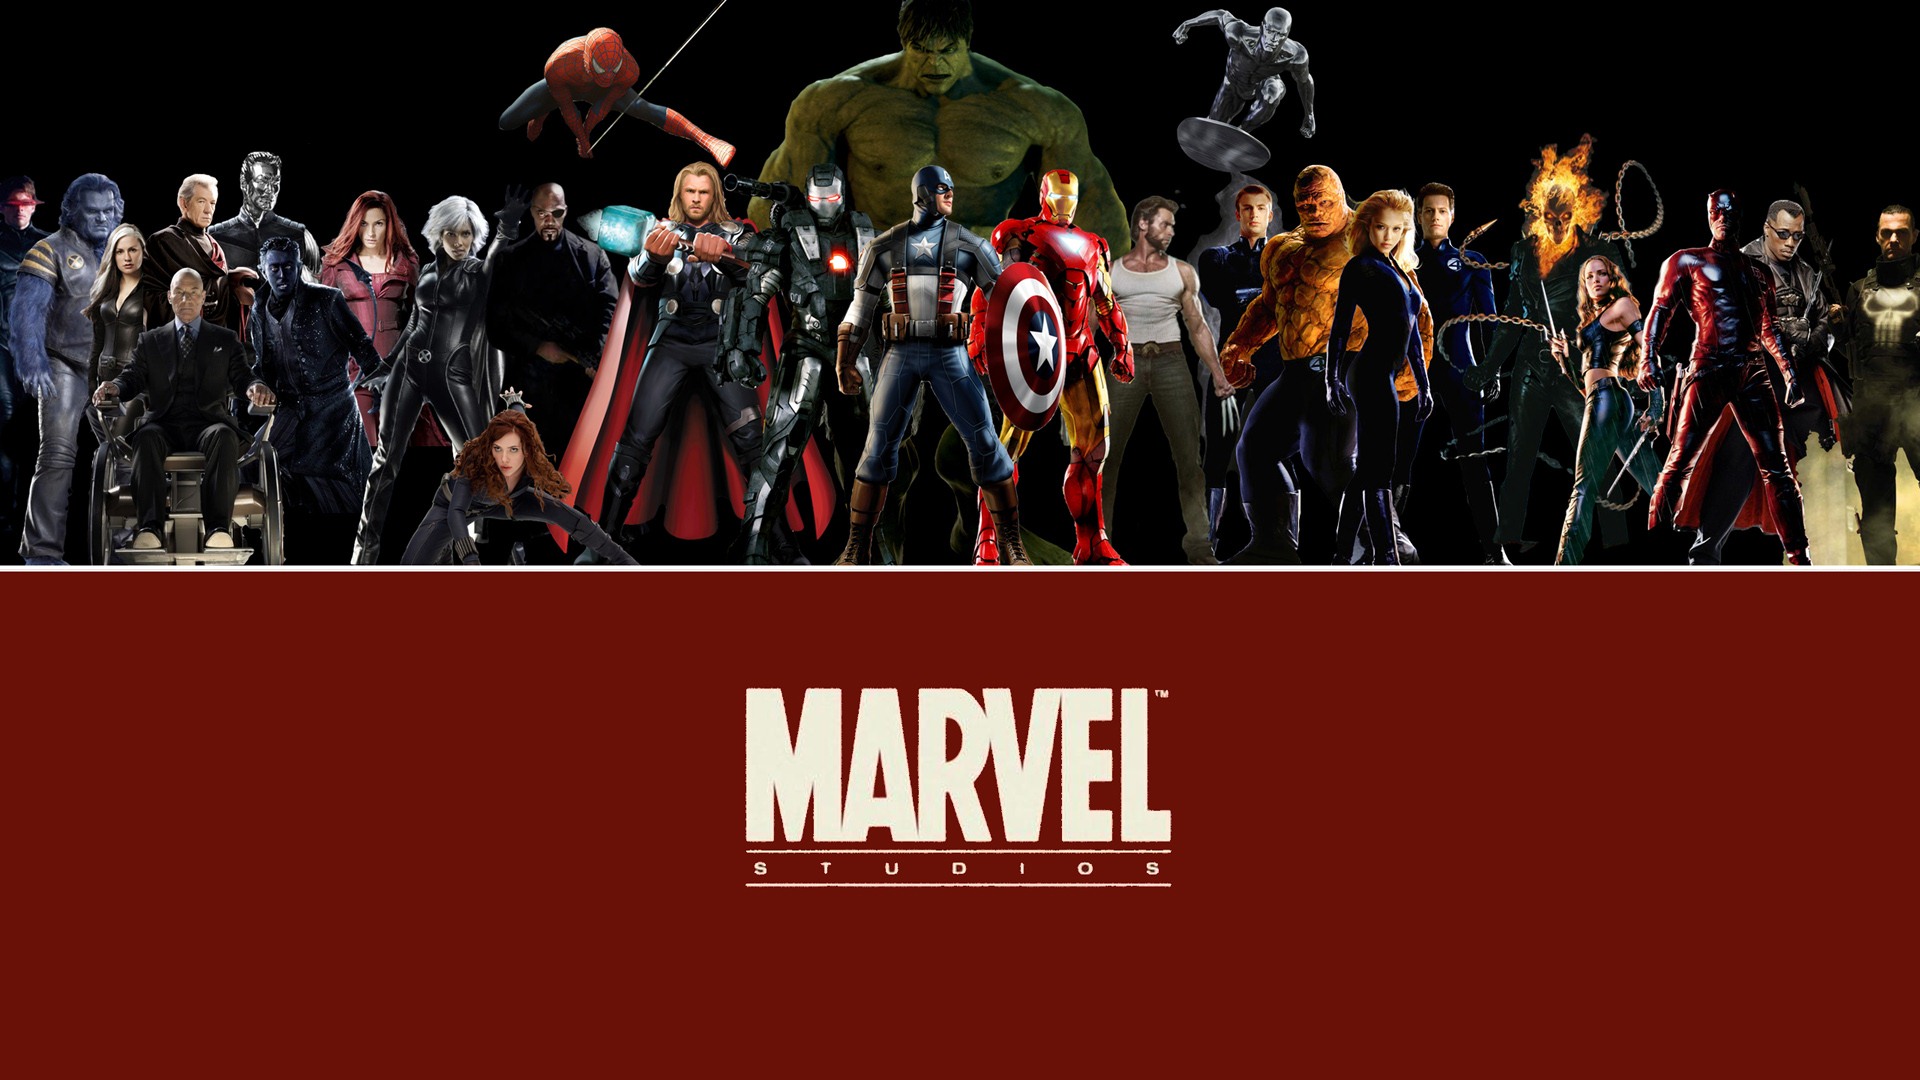 The Avengers 2012 复仇者联盟2012 高清壁纸8 - 1920x1080